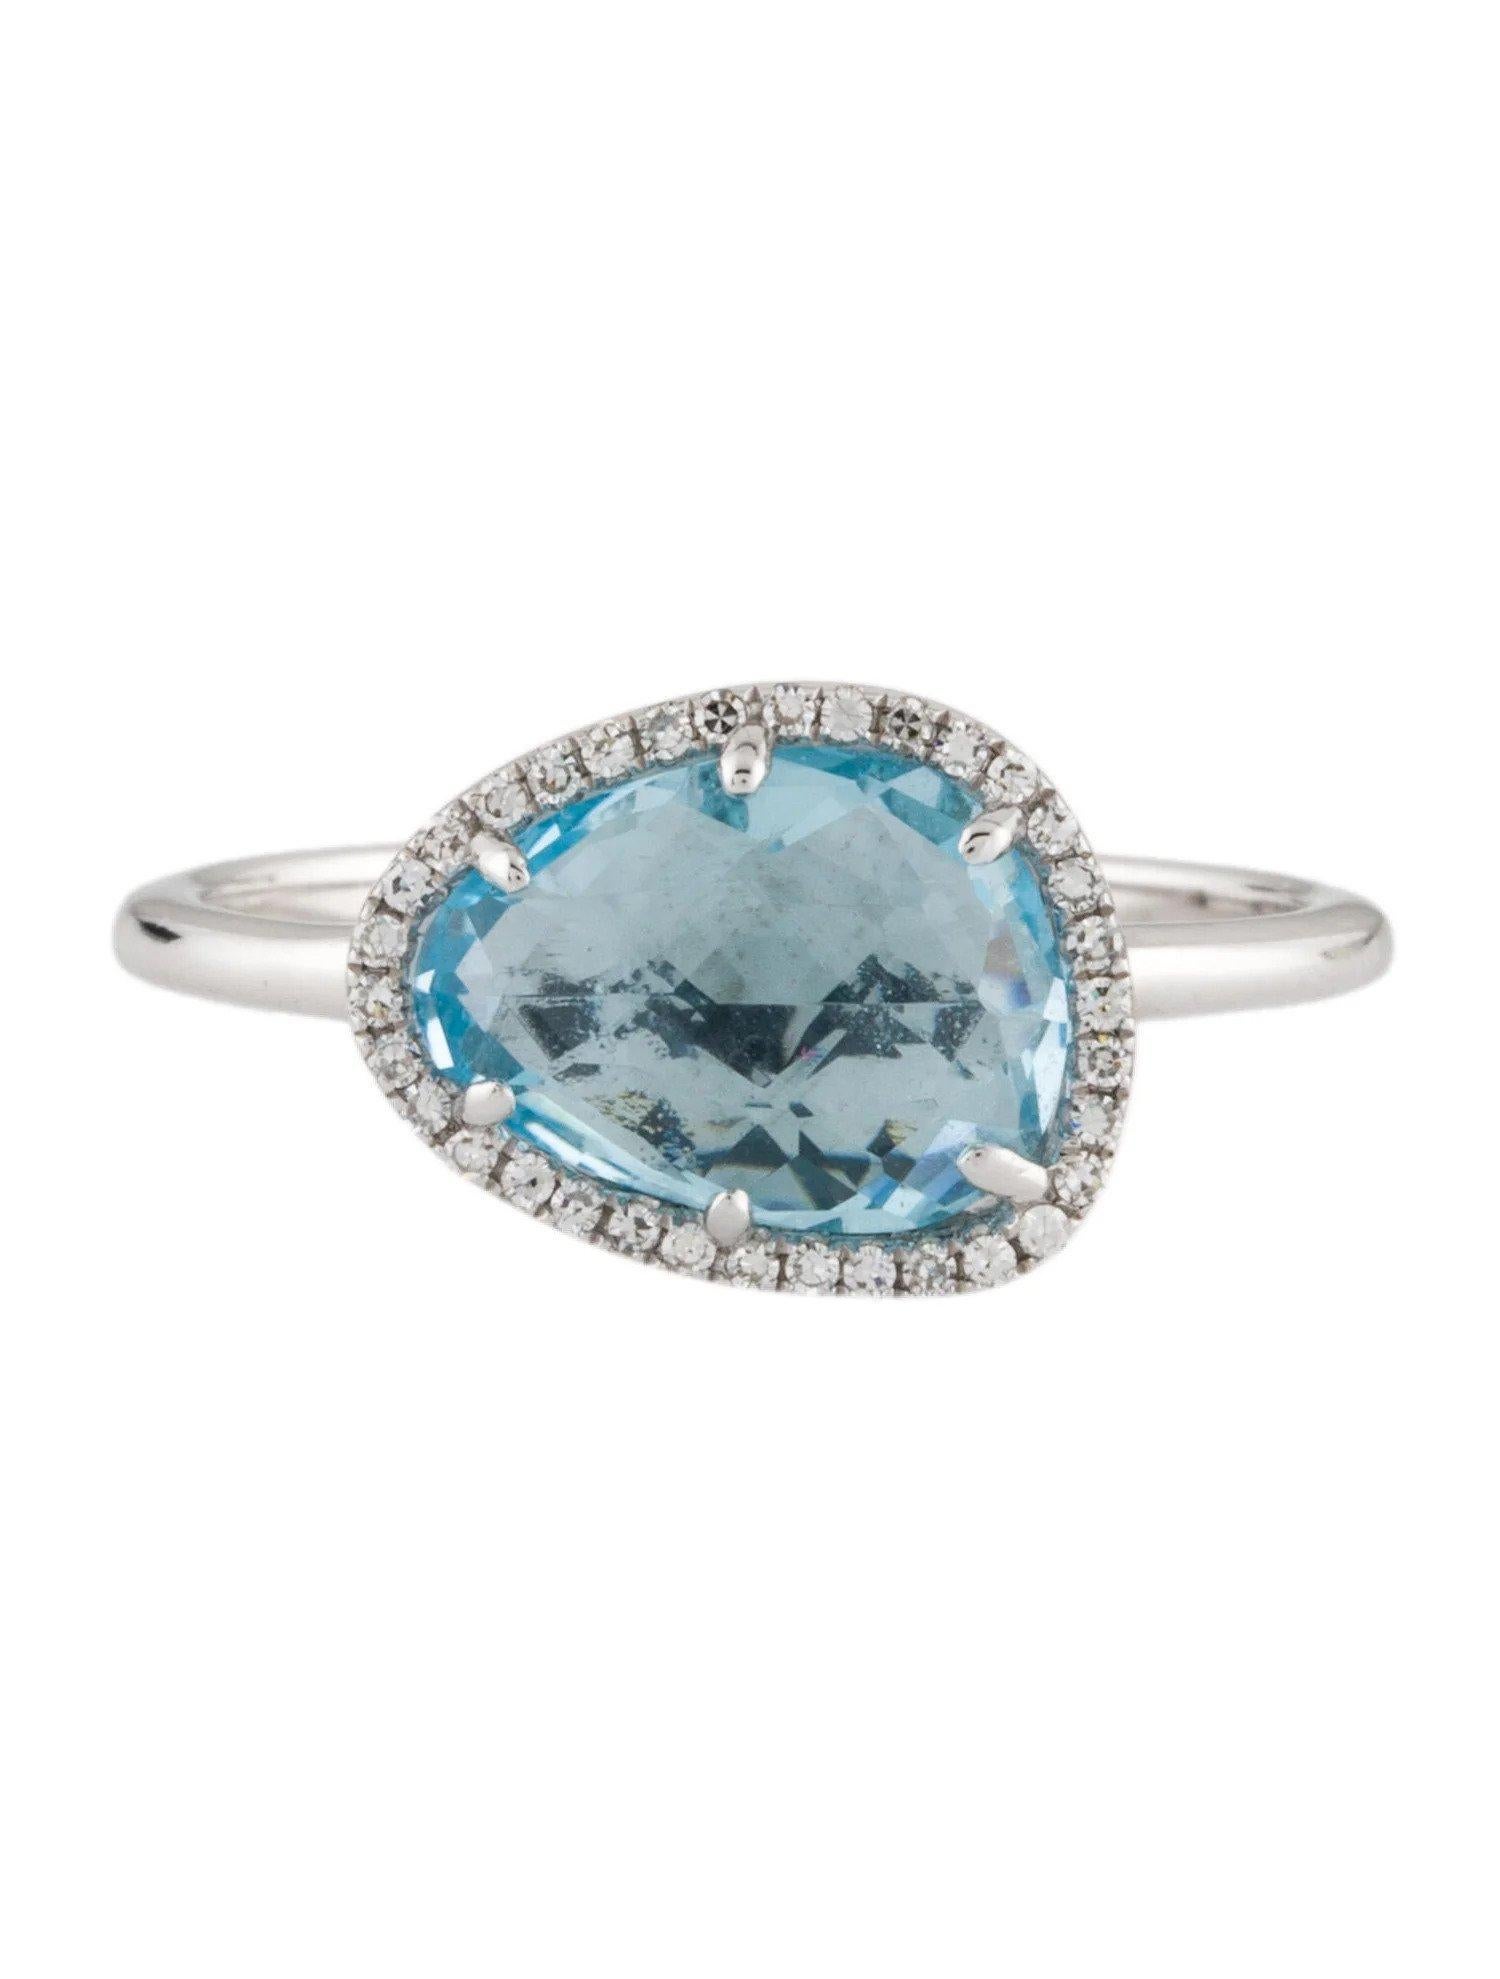 Dieser Ring aus Blautopas und Diamant ist ein atemberaubendes und zeitloses Accessoire, das jedem Outfit einen Hauch von Glamour und Raffinesse verleihen kann. 

Dieser Ring besteht aus einem 2,69 Karat Blautopas (12 x 9 MM) mit einem Diamant-Halo,